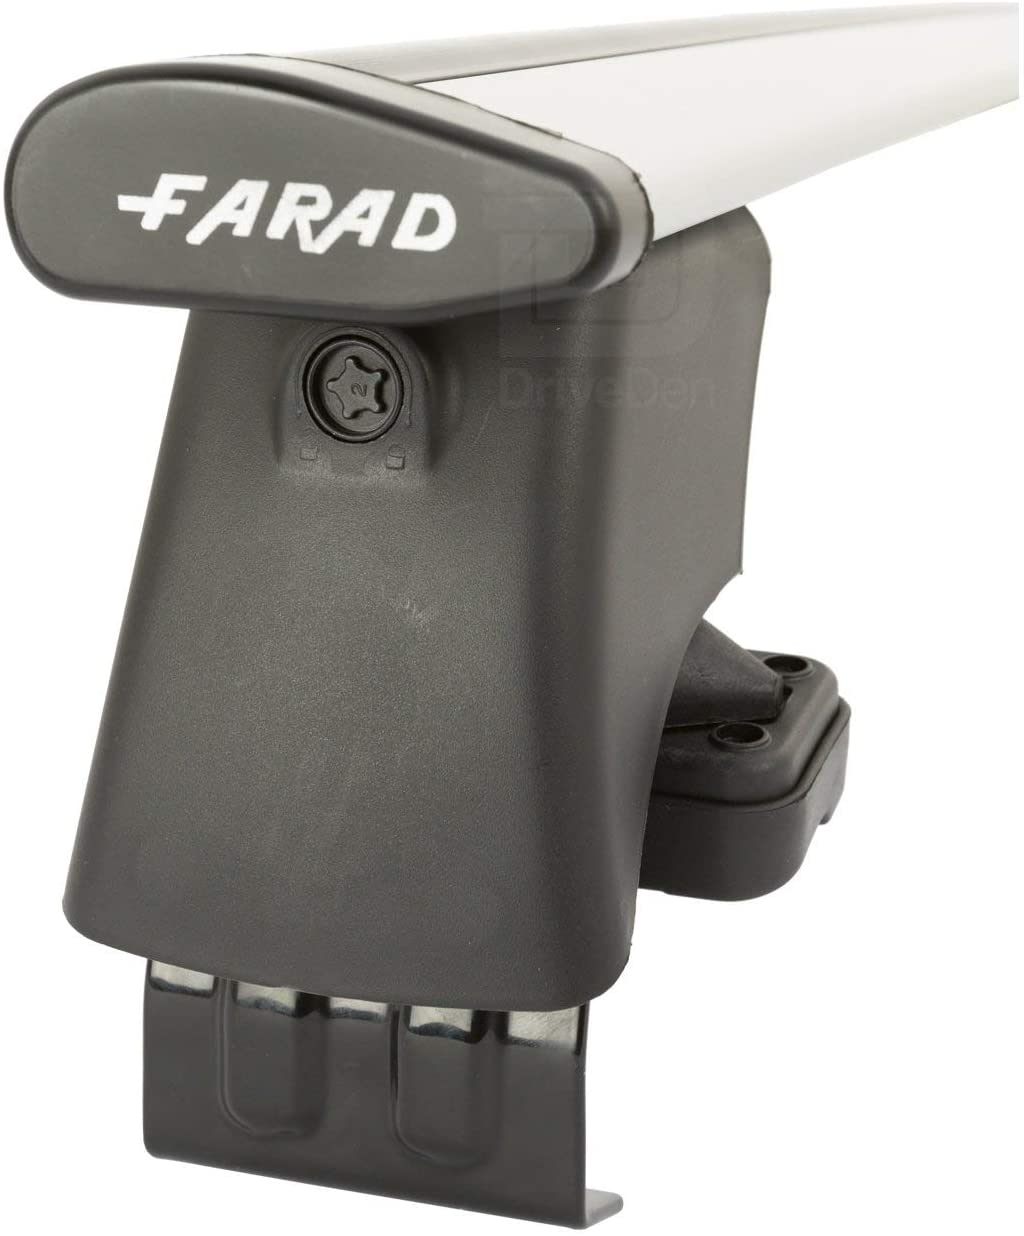 FARAD-Kit H2 per barre portatutto - Fiat Punto 2012> (senza corrimano)